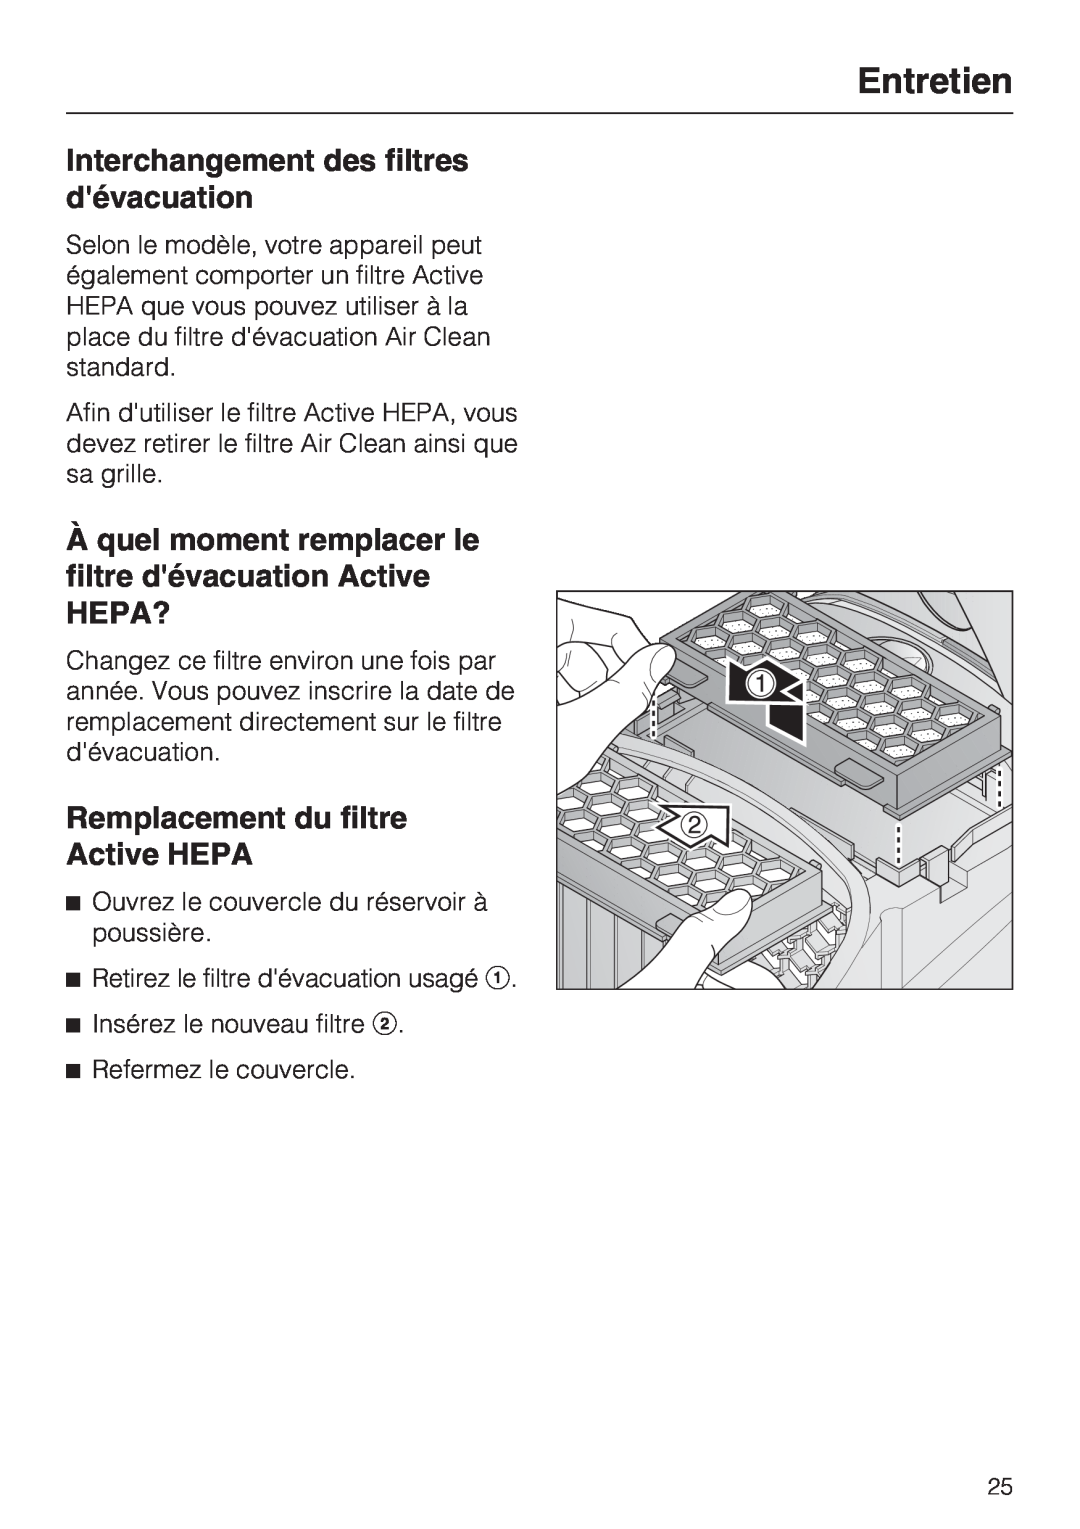 Miele S 2001 manual Interchangement des filtres dévacuation, Hepa?, Remplacement du filtre Active HEPA, Entretien 